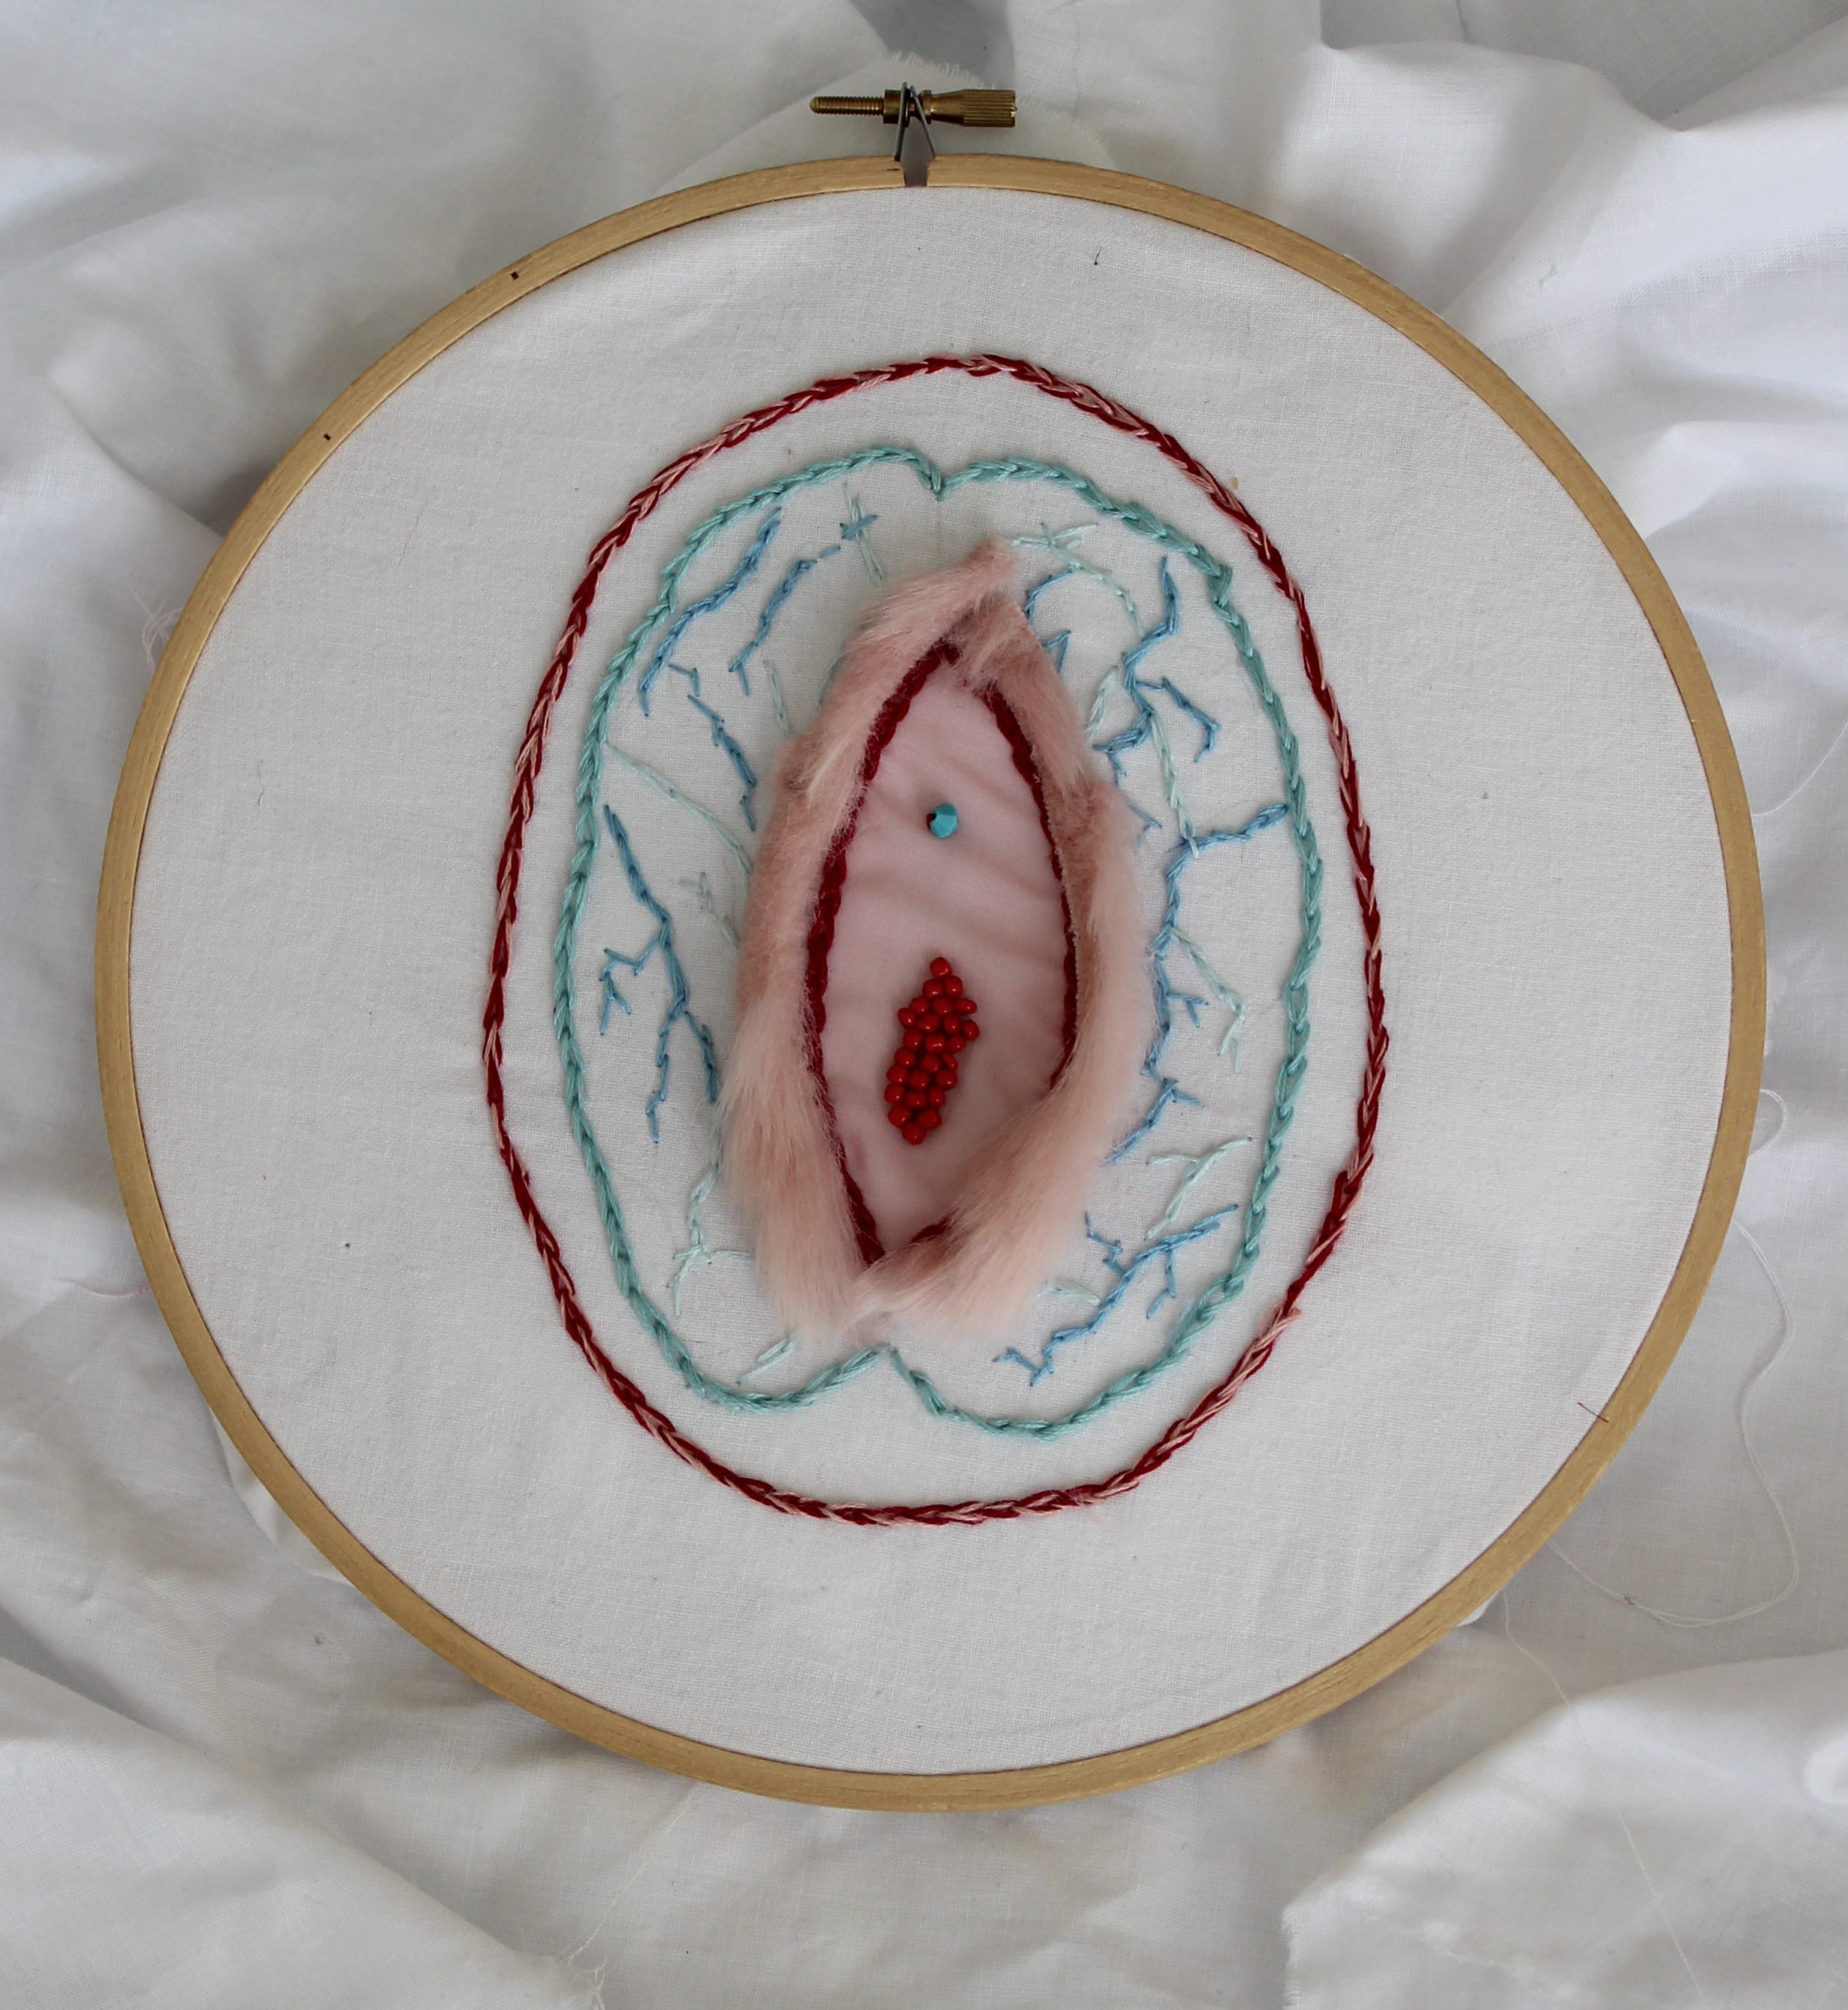 Cerebro vaginal